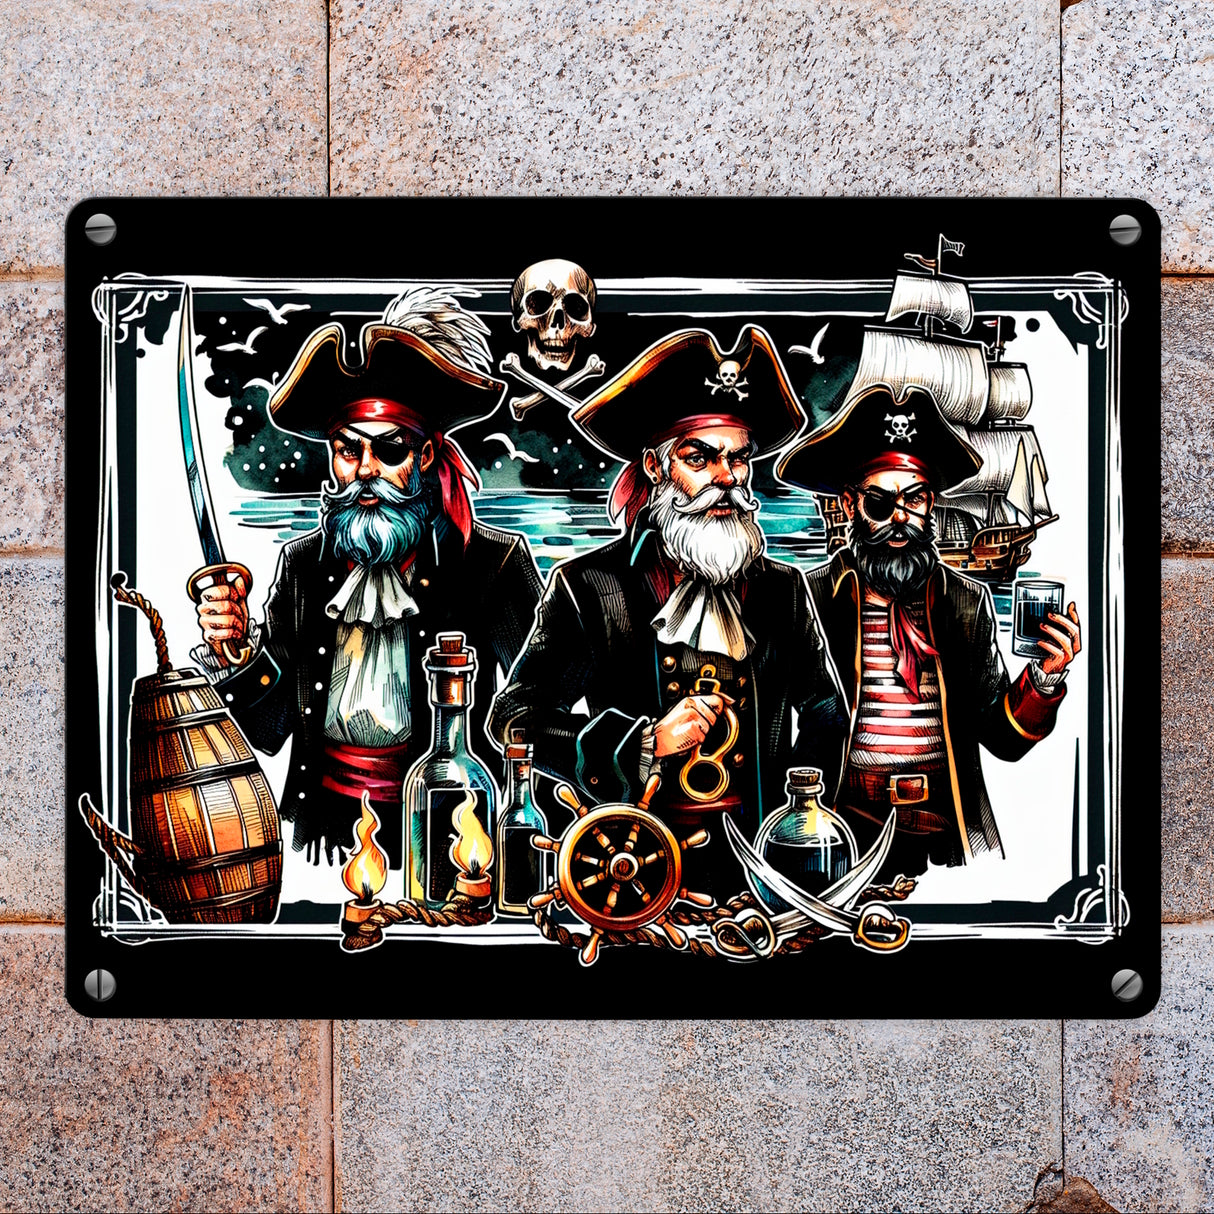 Triumphierende Piraten Metallschild in 15x20 cm